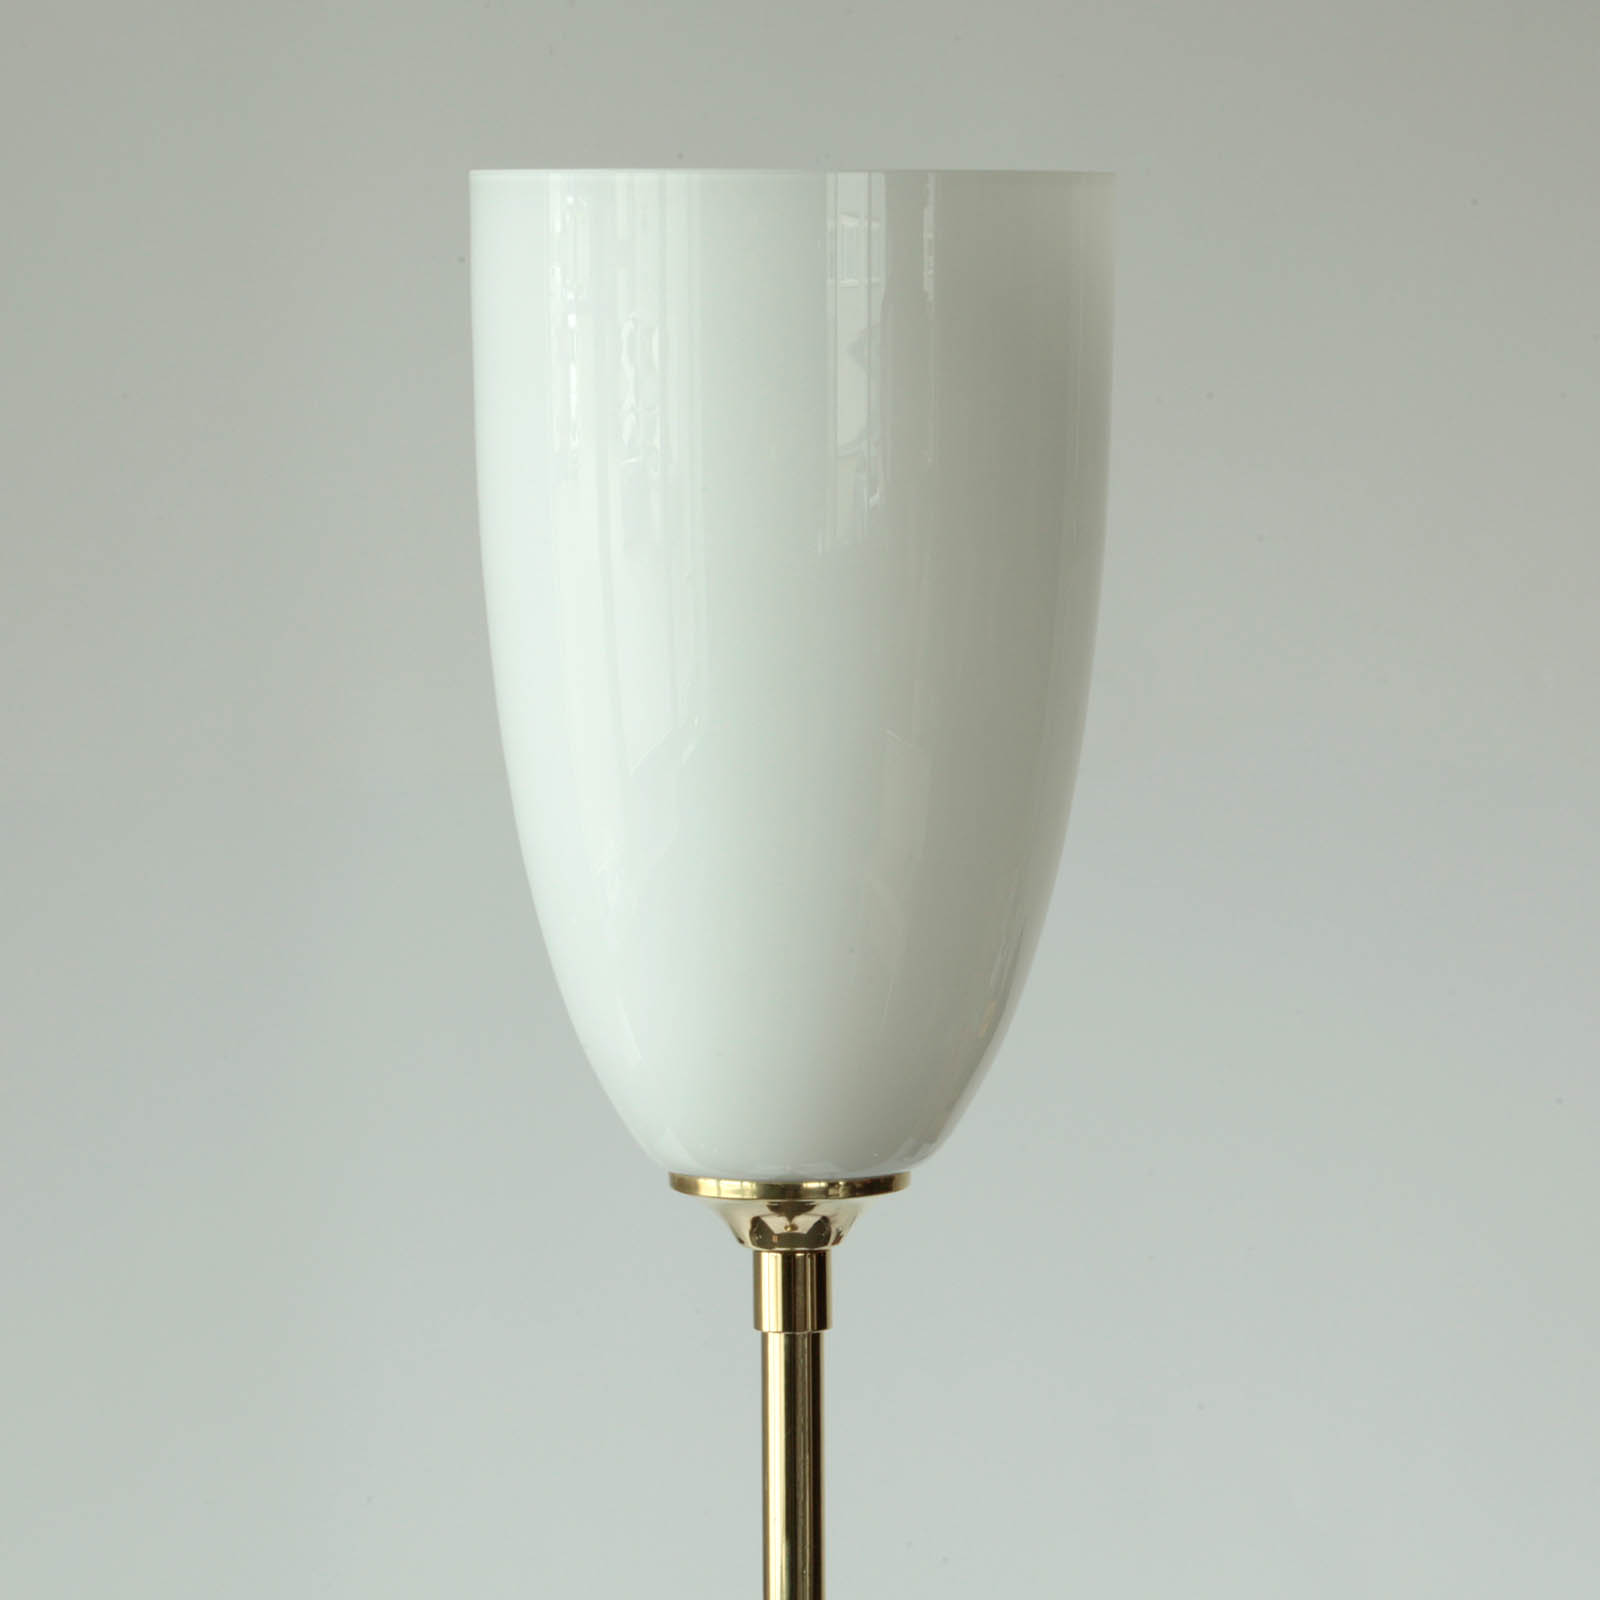 Art Deco Floor Lamp with Goblet Glass Shade: Messing poliert und lackiert mit weiß glänzendem Opalglas